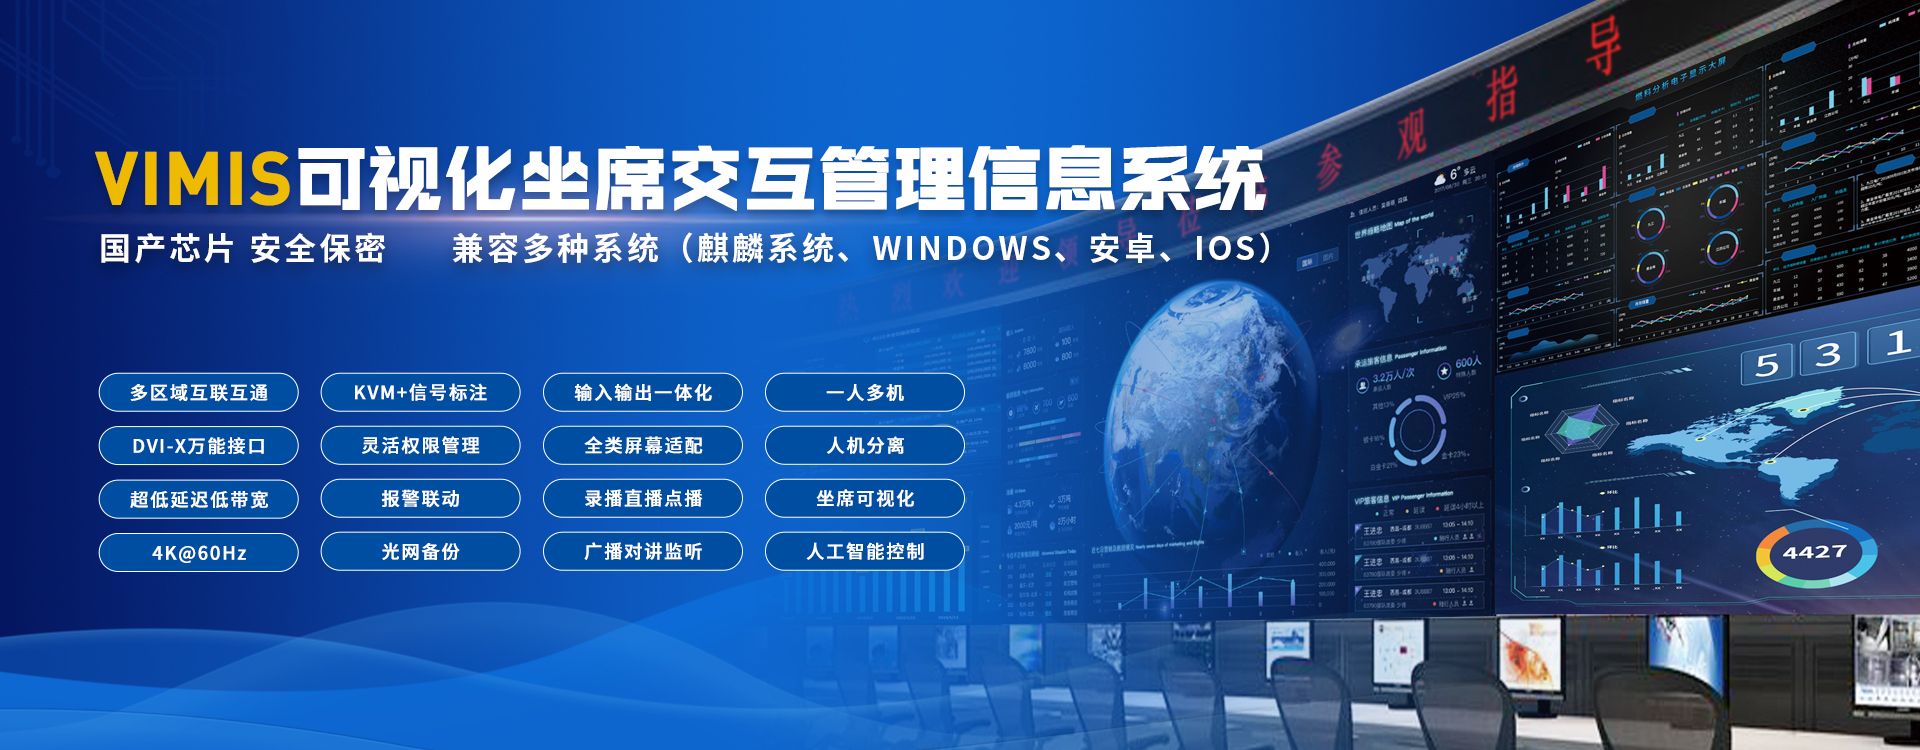 杭州利旺智能科技有限公司已经服务5000千家以上的企业和政府单位视频会议系统、电话会议系统、多媒体会议室系统